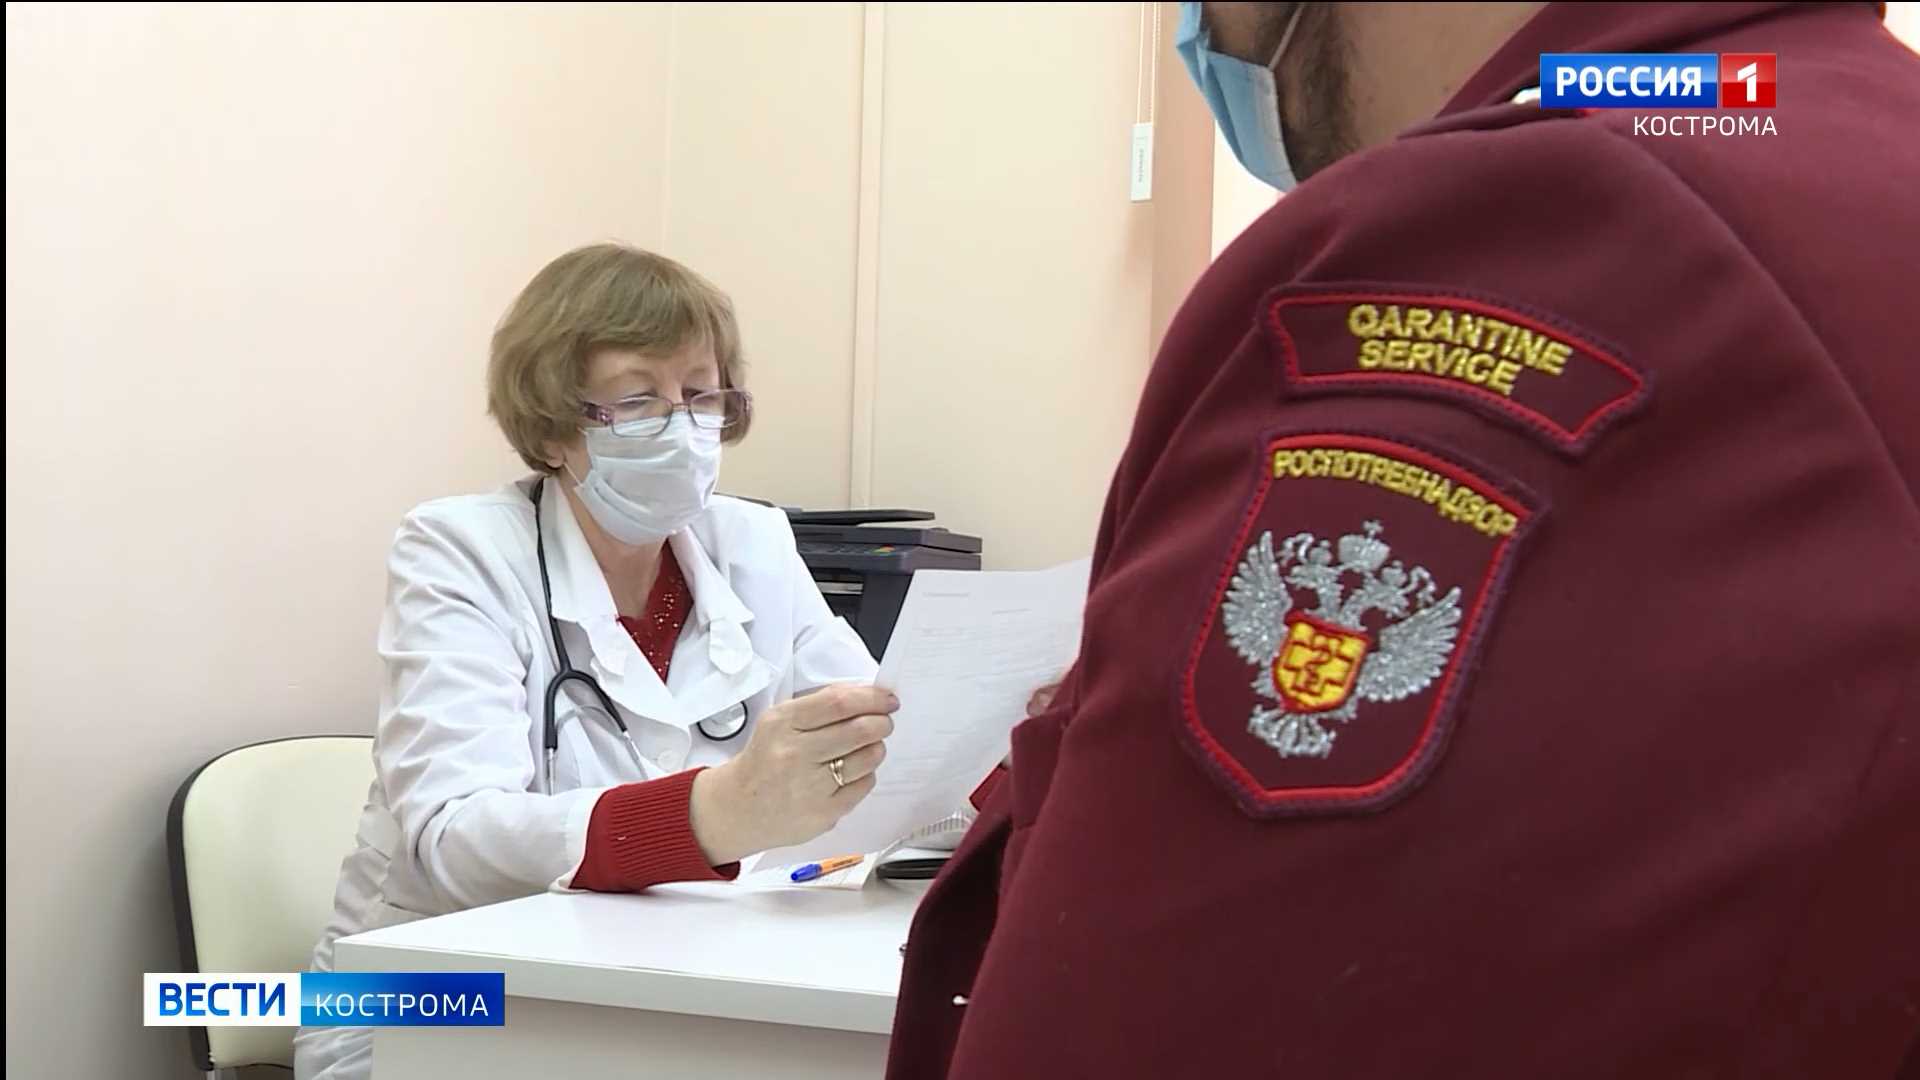 Главный санитарный врач Костромской области привился от COVID-19